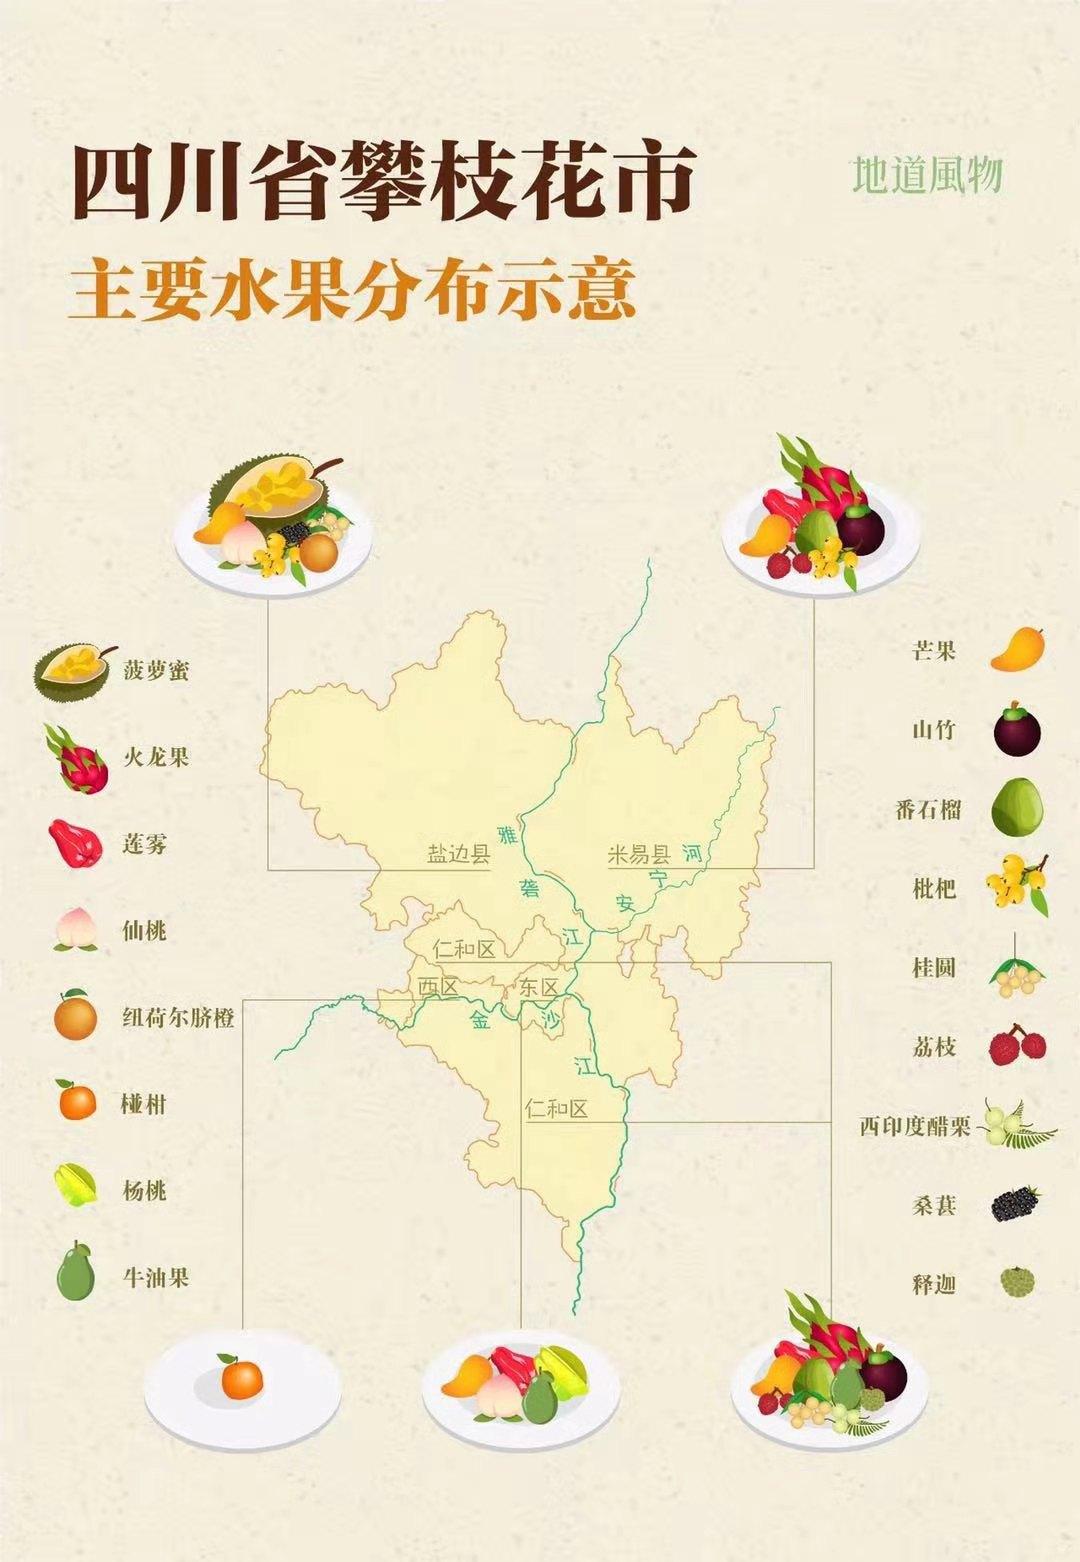 攀枝花除了是人们详知的钢铁之城还是四川唯一的亚热带水果生产基地